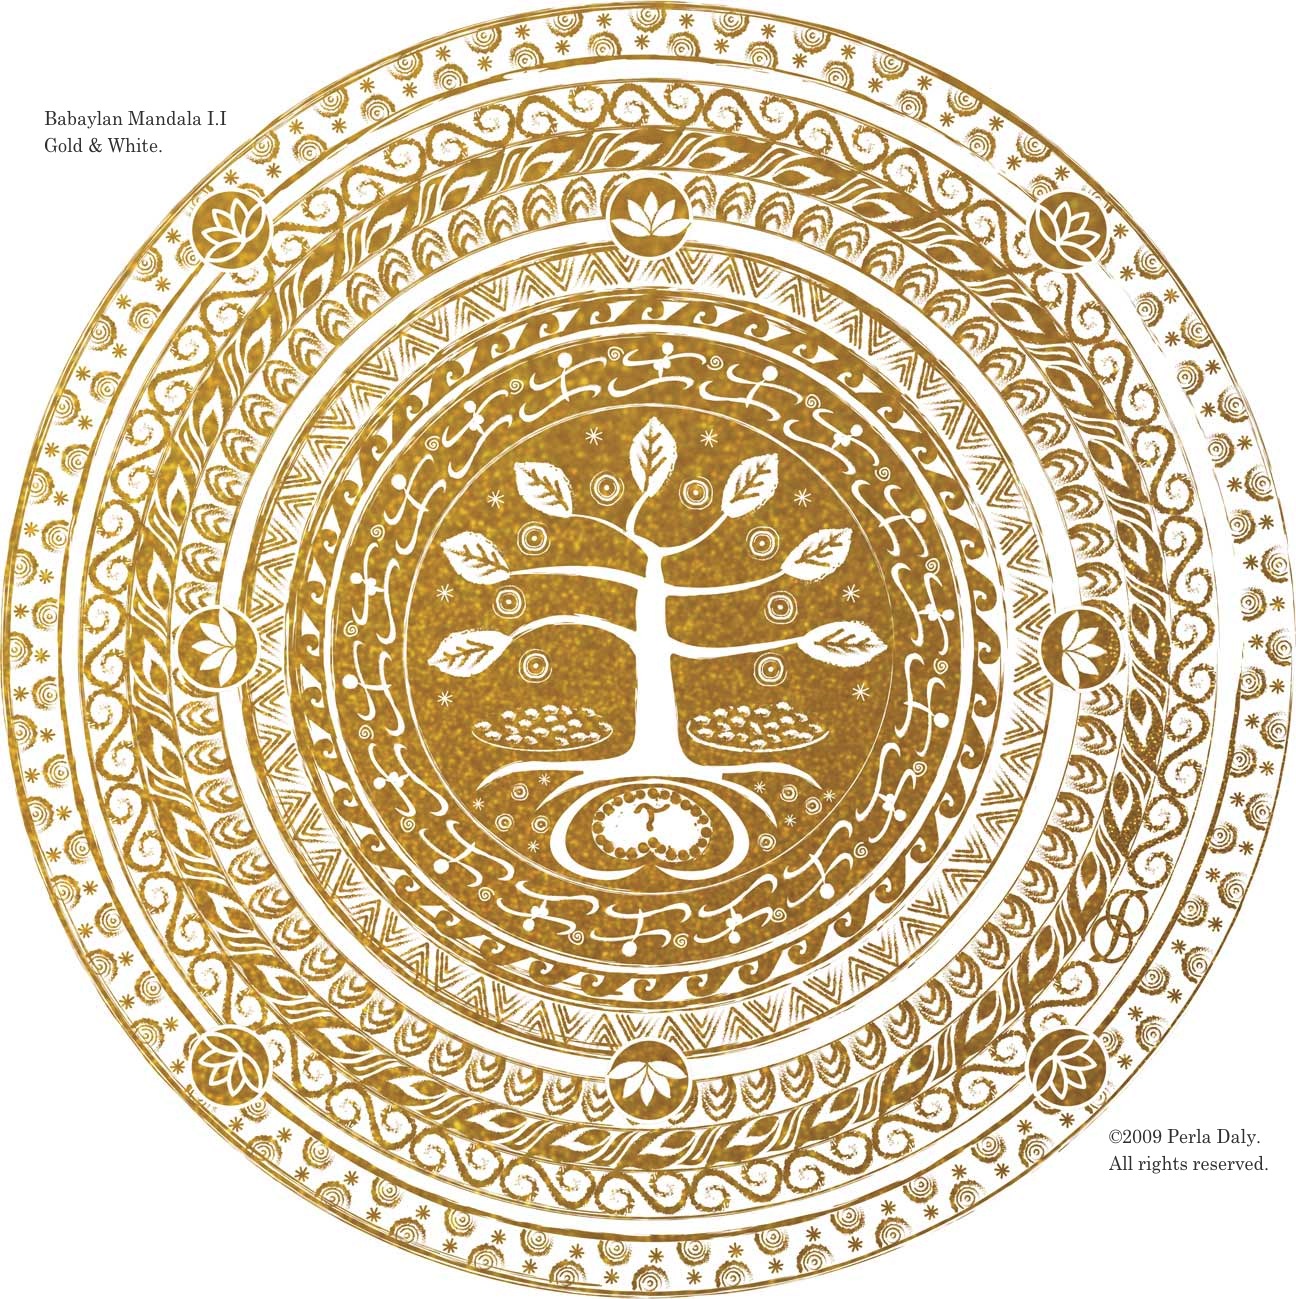 Babaylan Mandala I.I, Gold and White, by BagongPinay. She says: The Bahala Tree of Life represents YOU